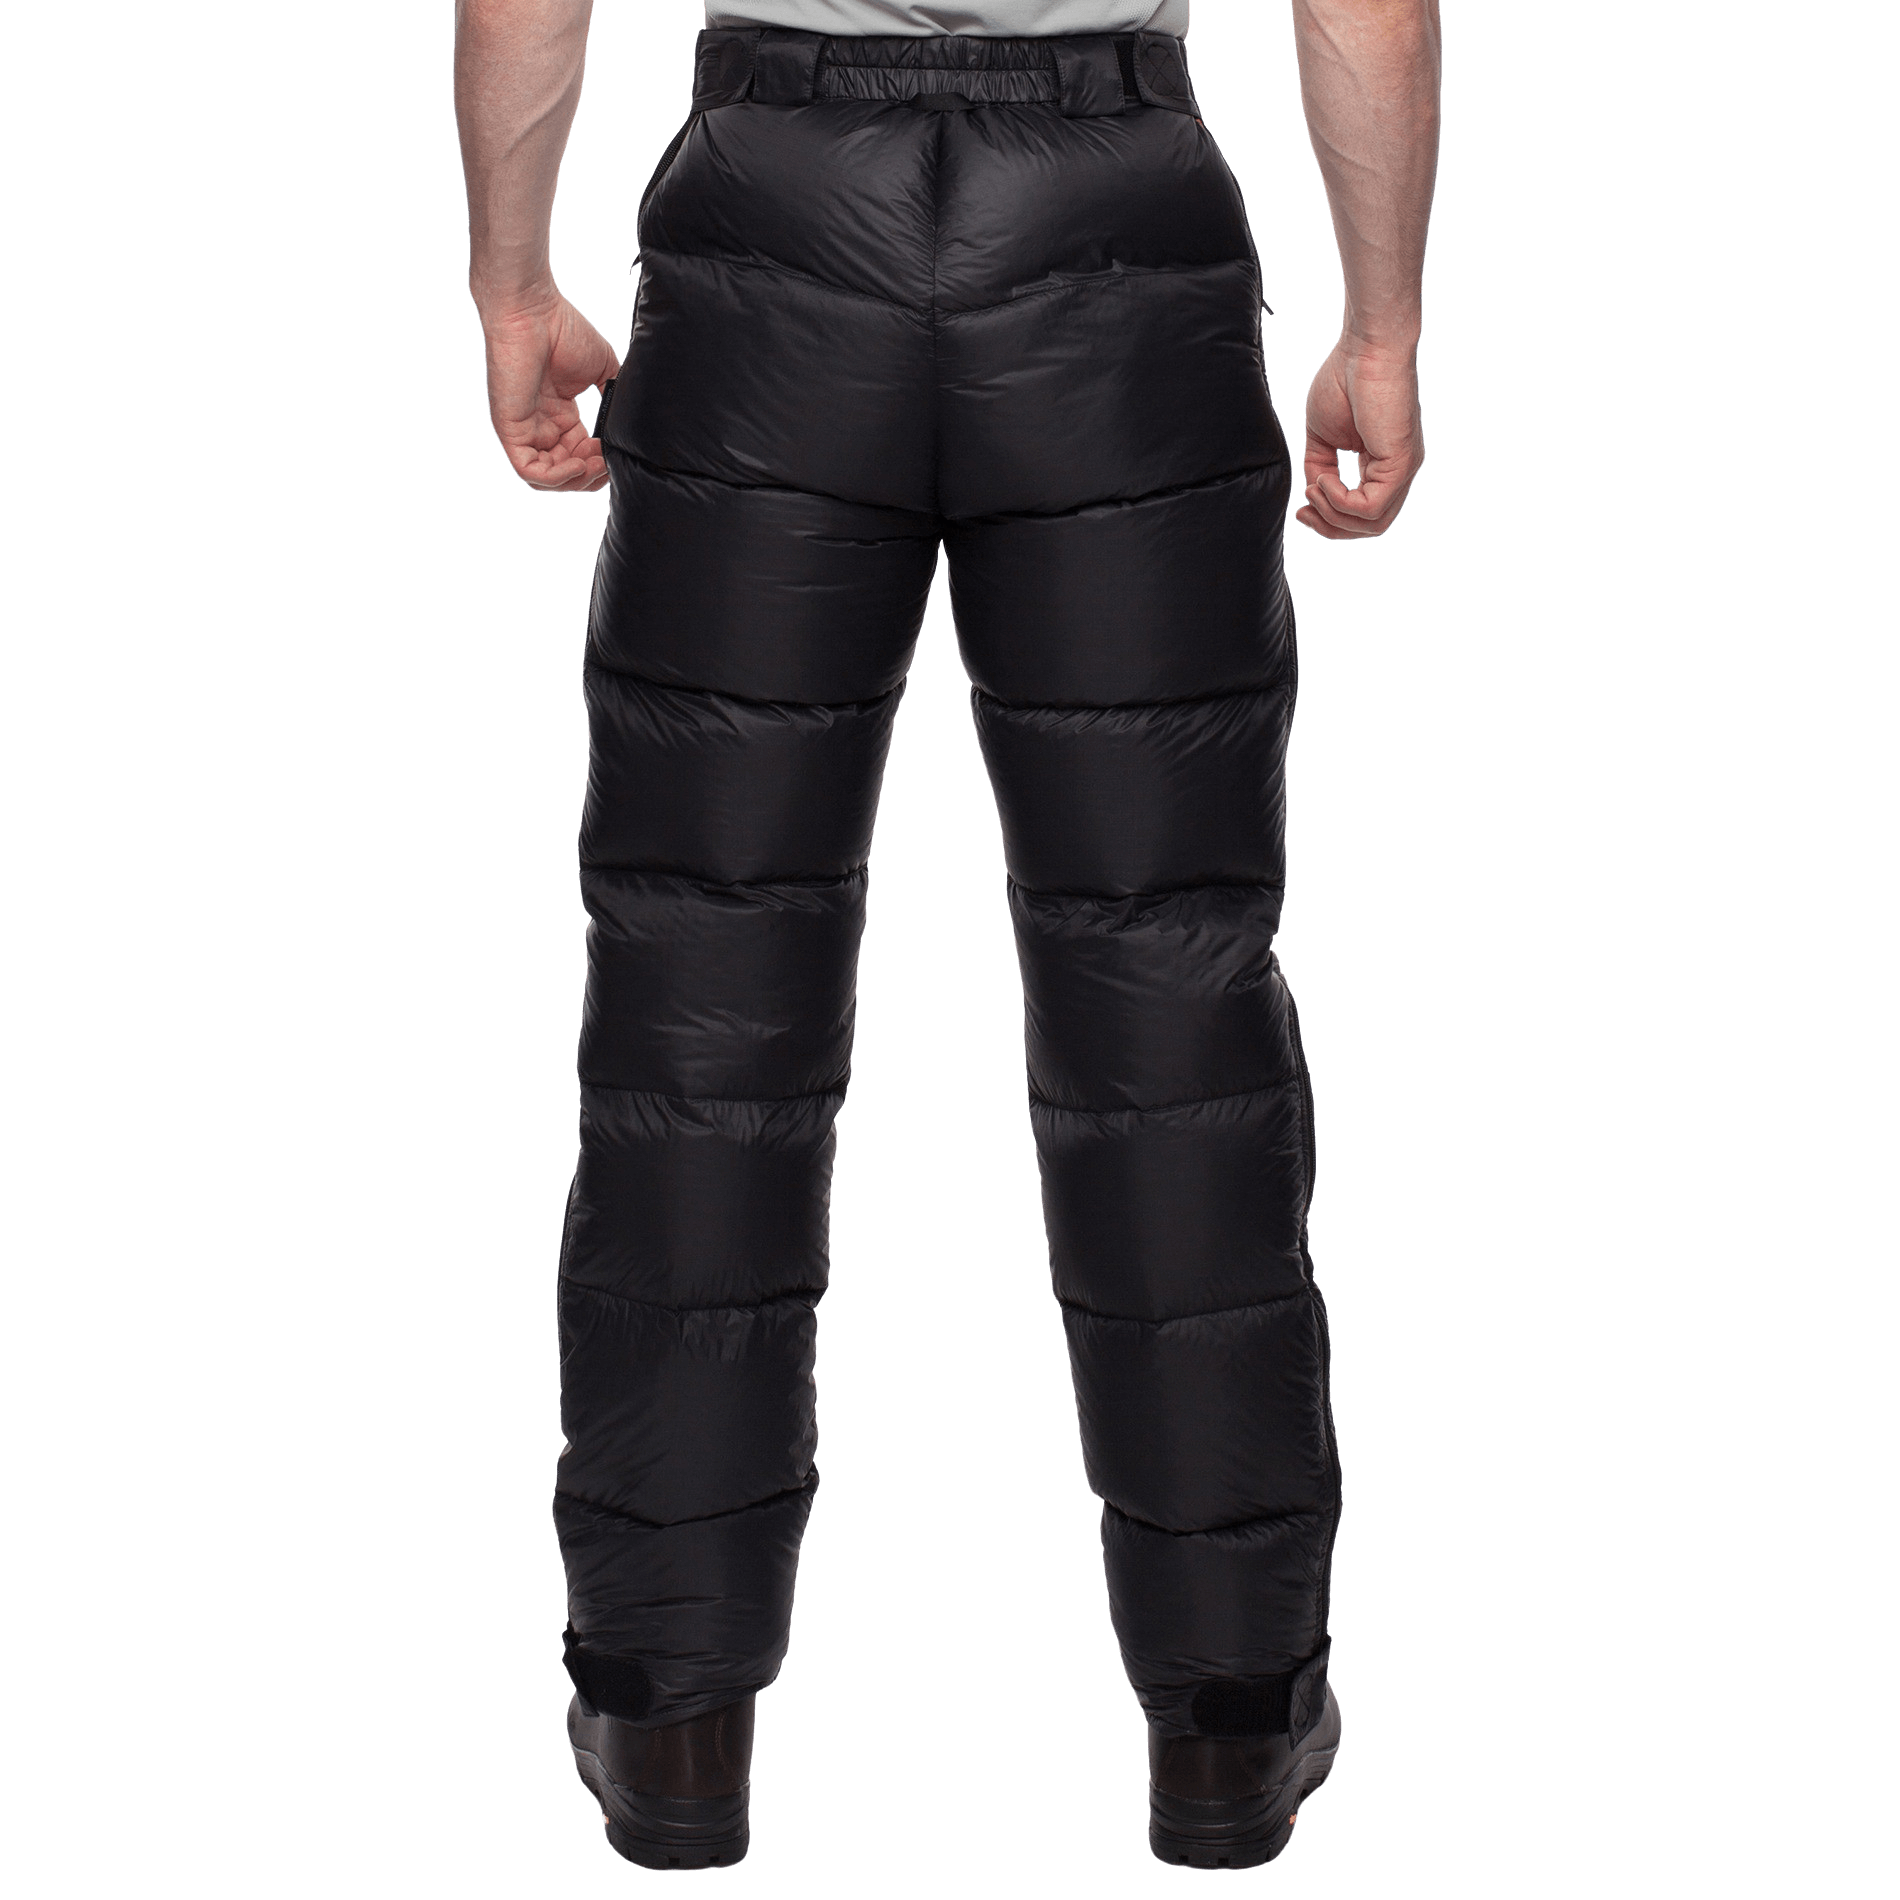 Пуховые брюки BASK, размер 48, цвет черный 3323-9009-048 Meribel v3 - фото 3